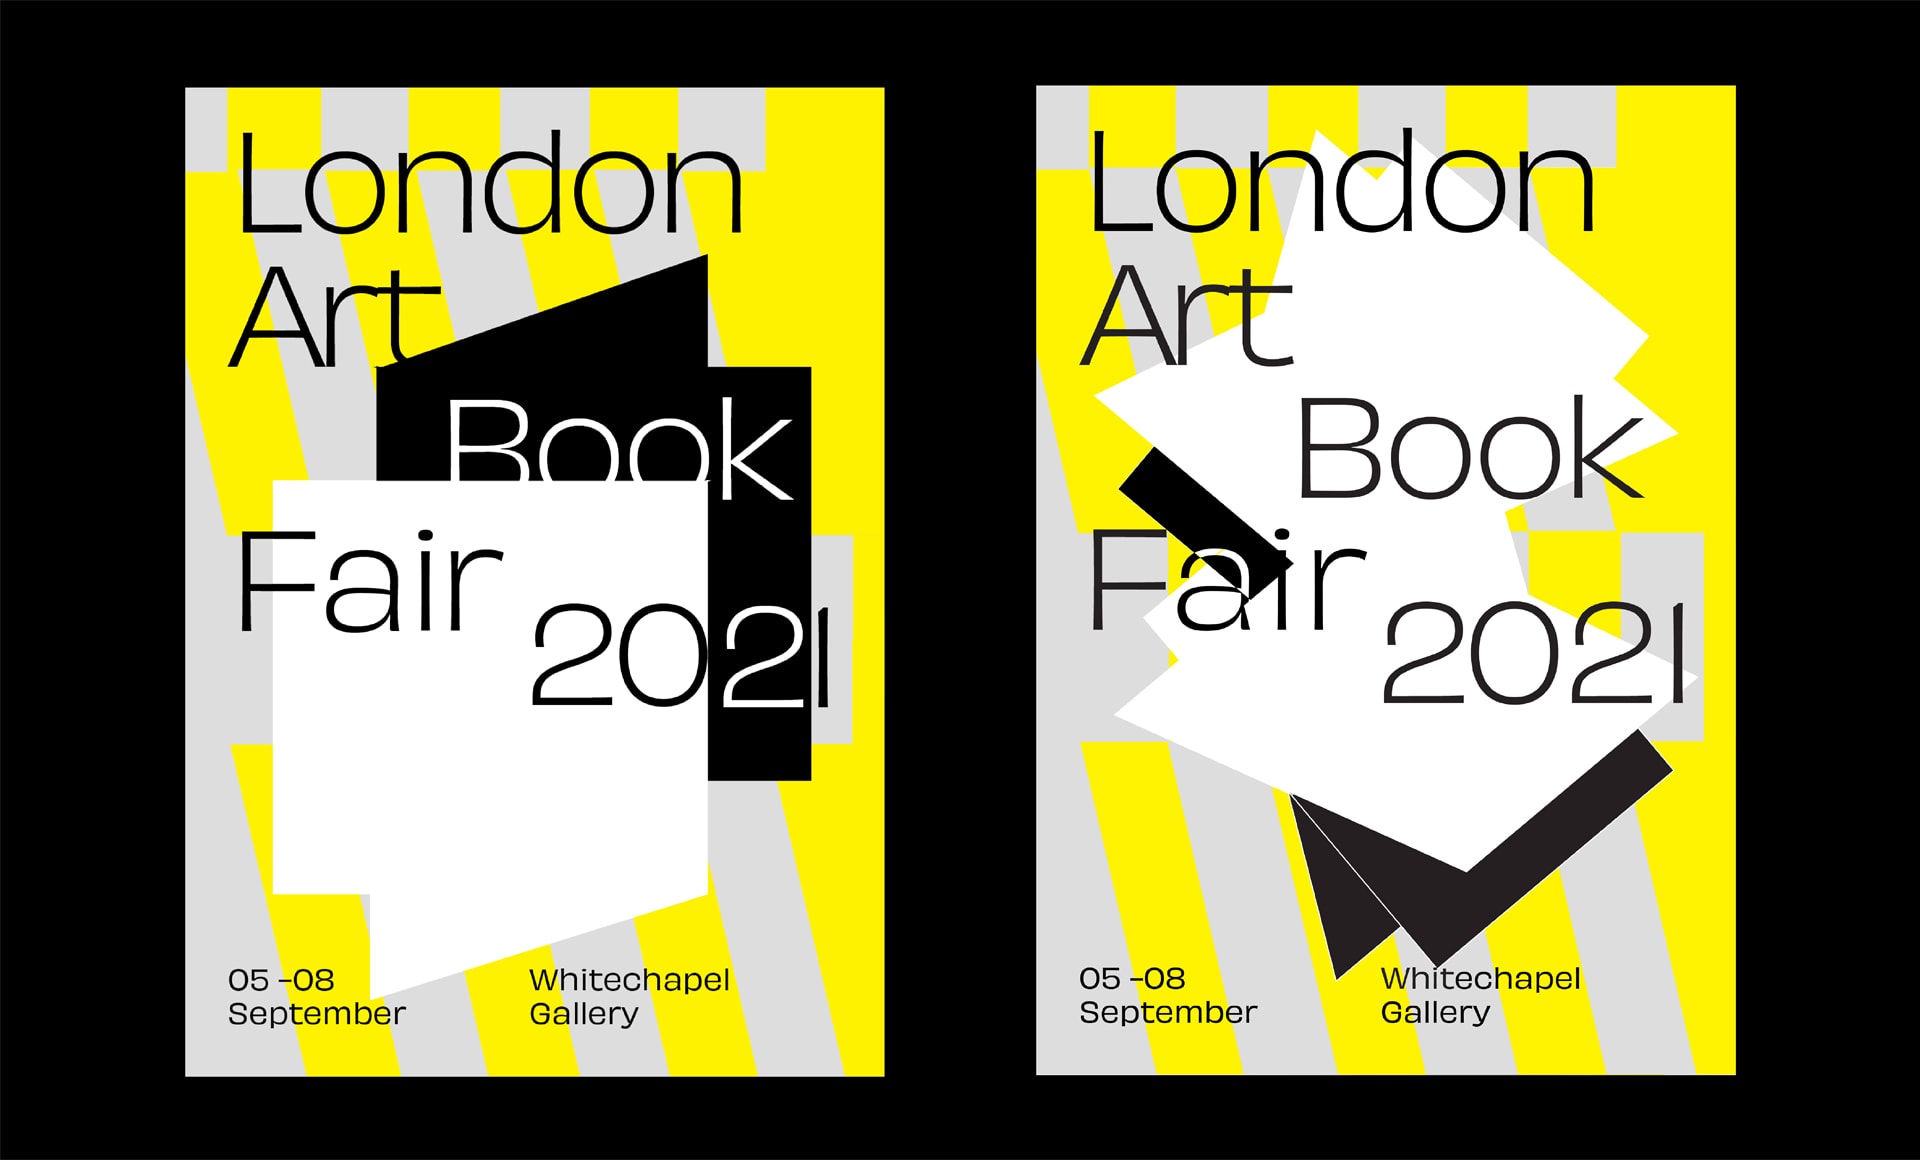 London Art Book Fair